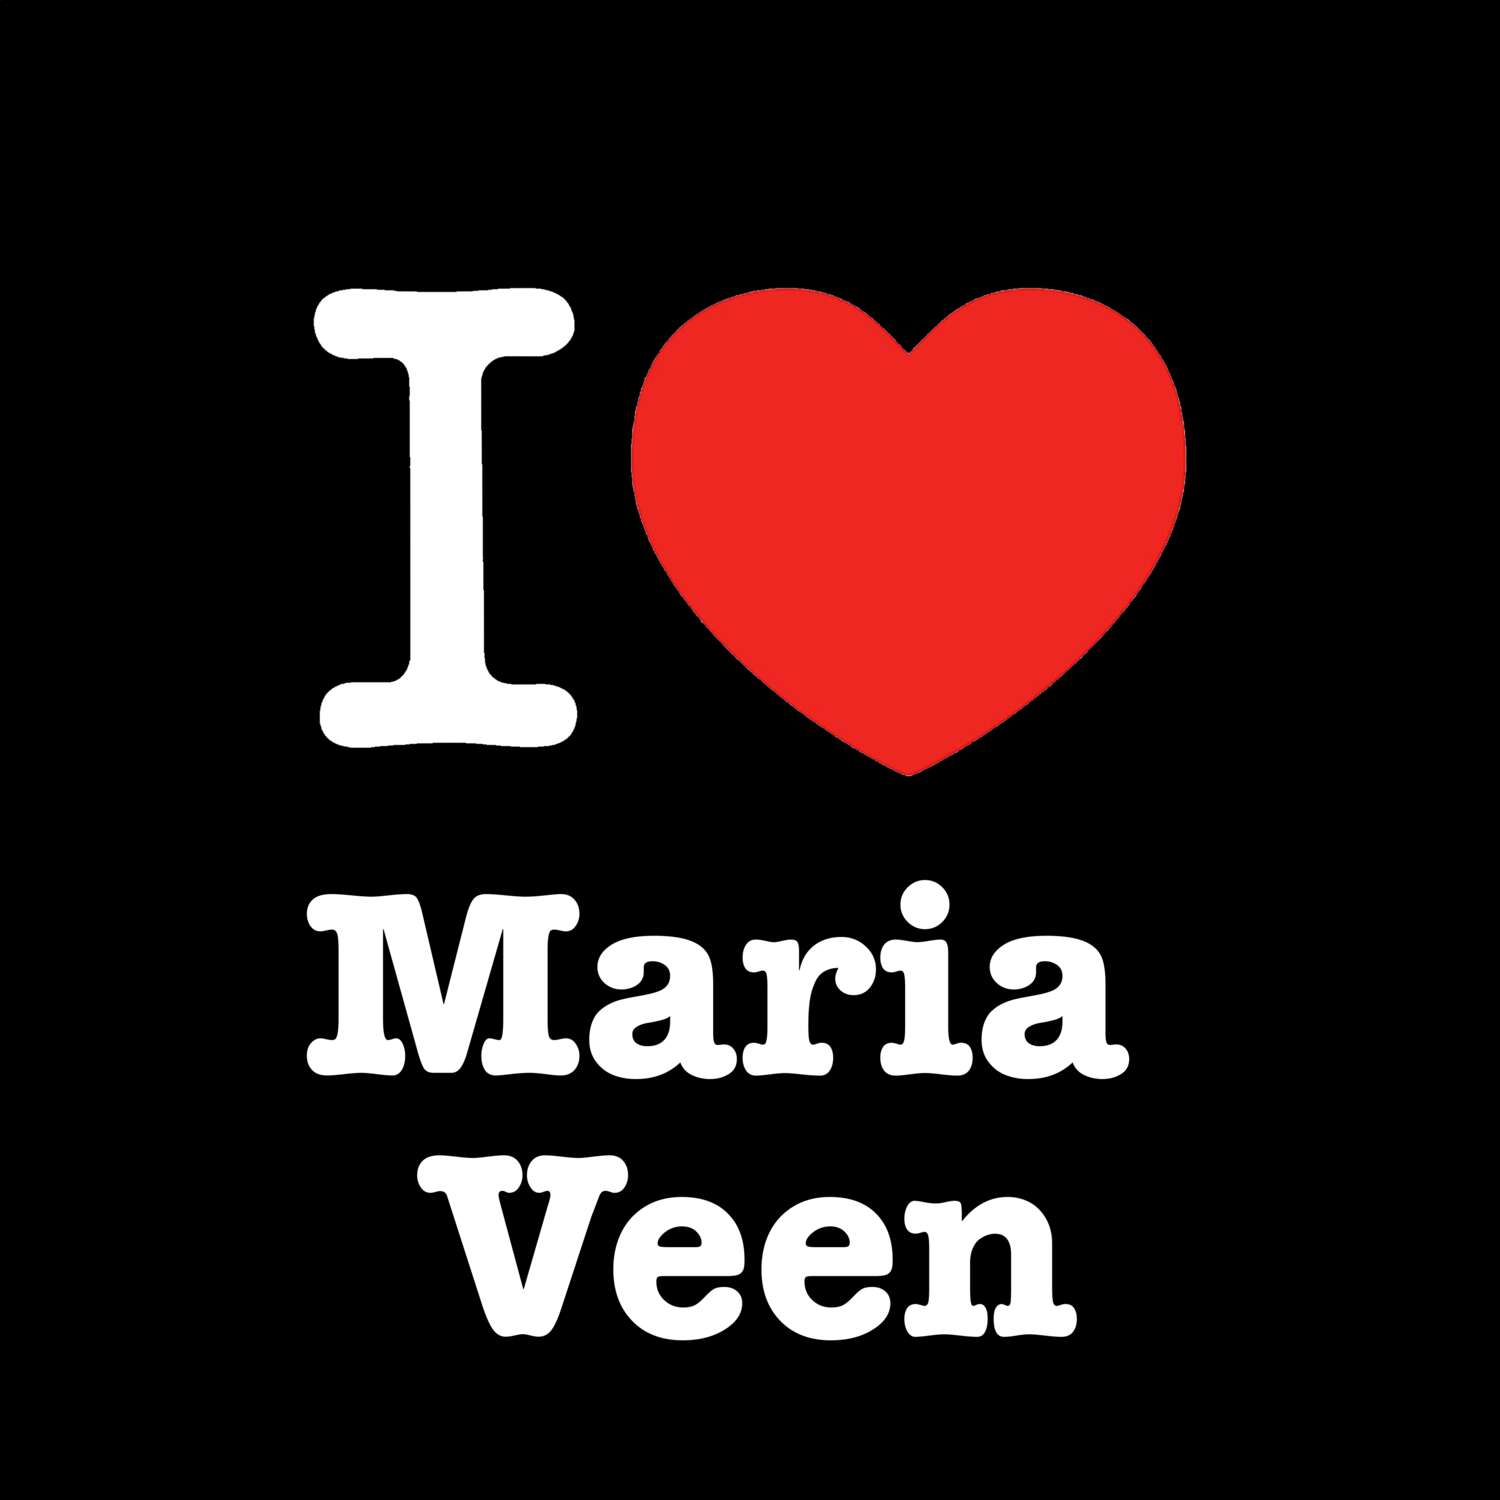 Maria Veen T-Shirt »I love«